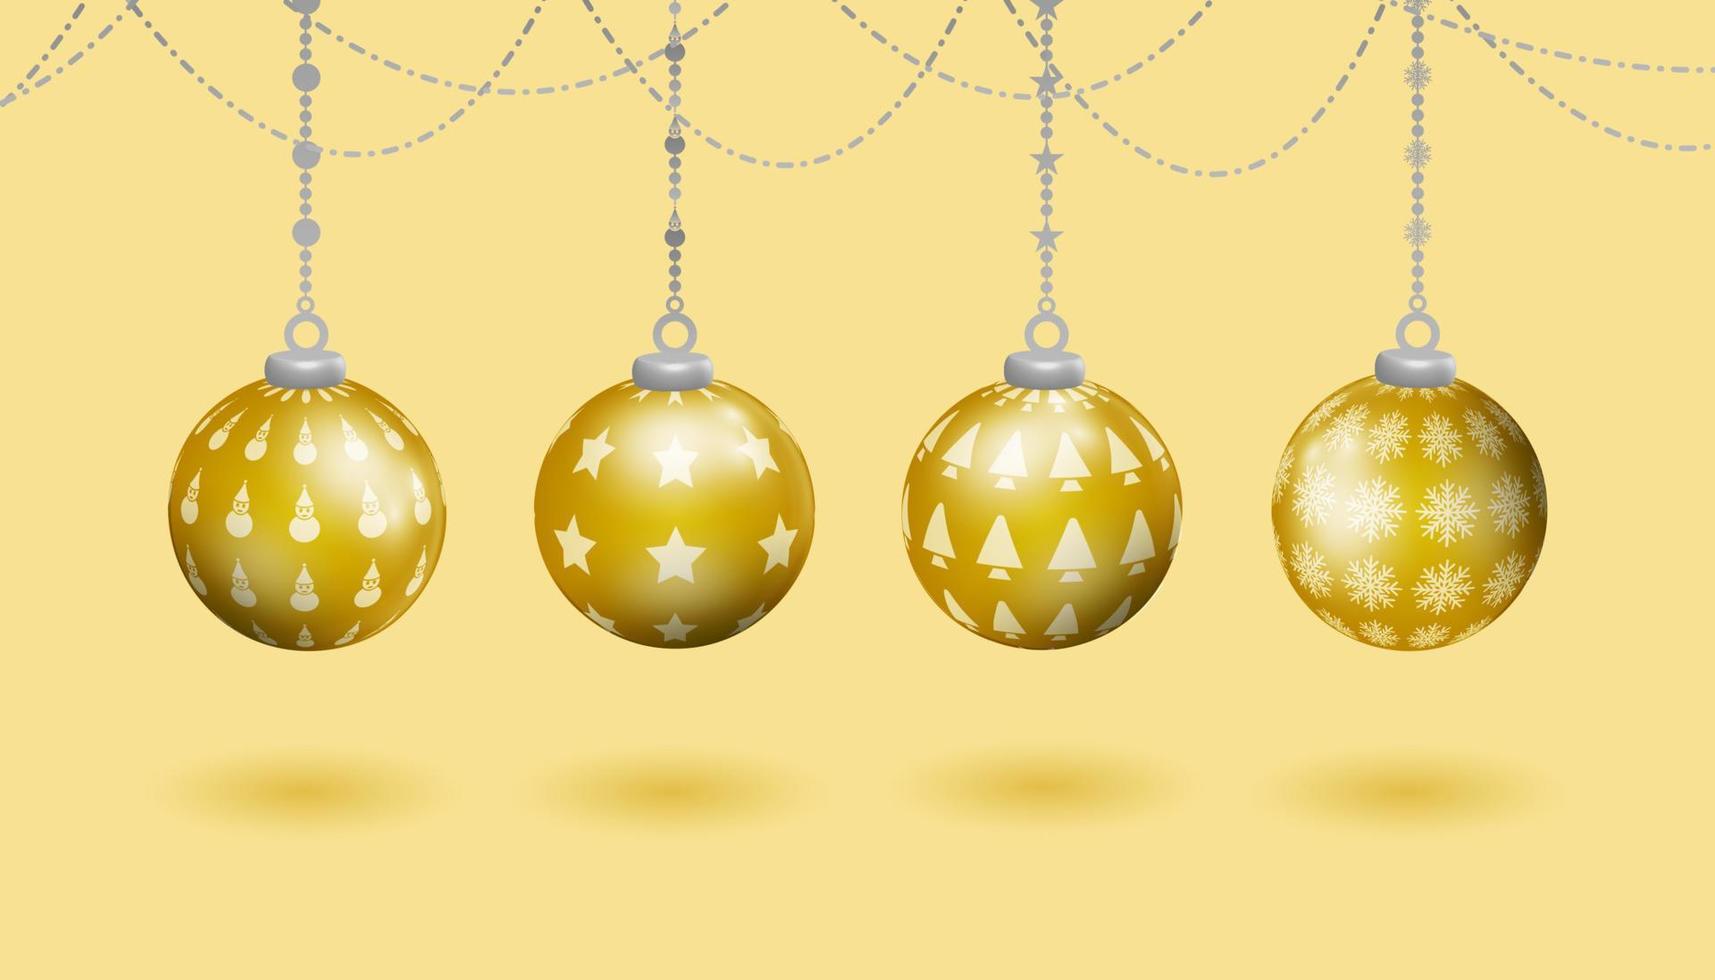 conjunto de decoração de natal de bola suspensa realista de ouro, com vários padrões de símbolos de natal, árvore de natal, boneco de neve, estrelas, flocos de neve vetor